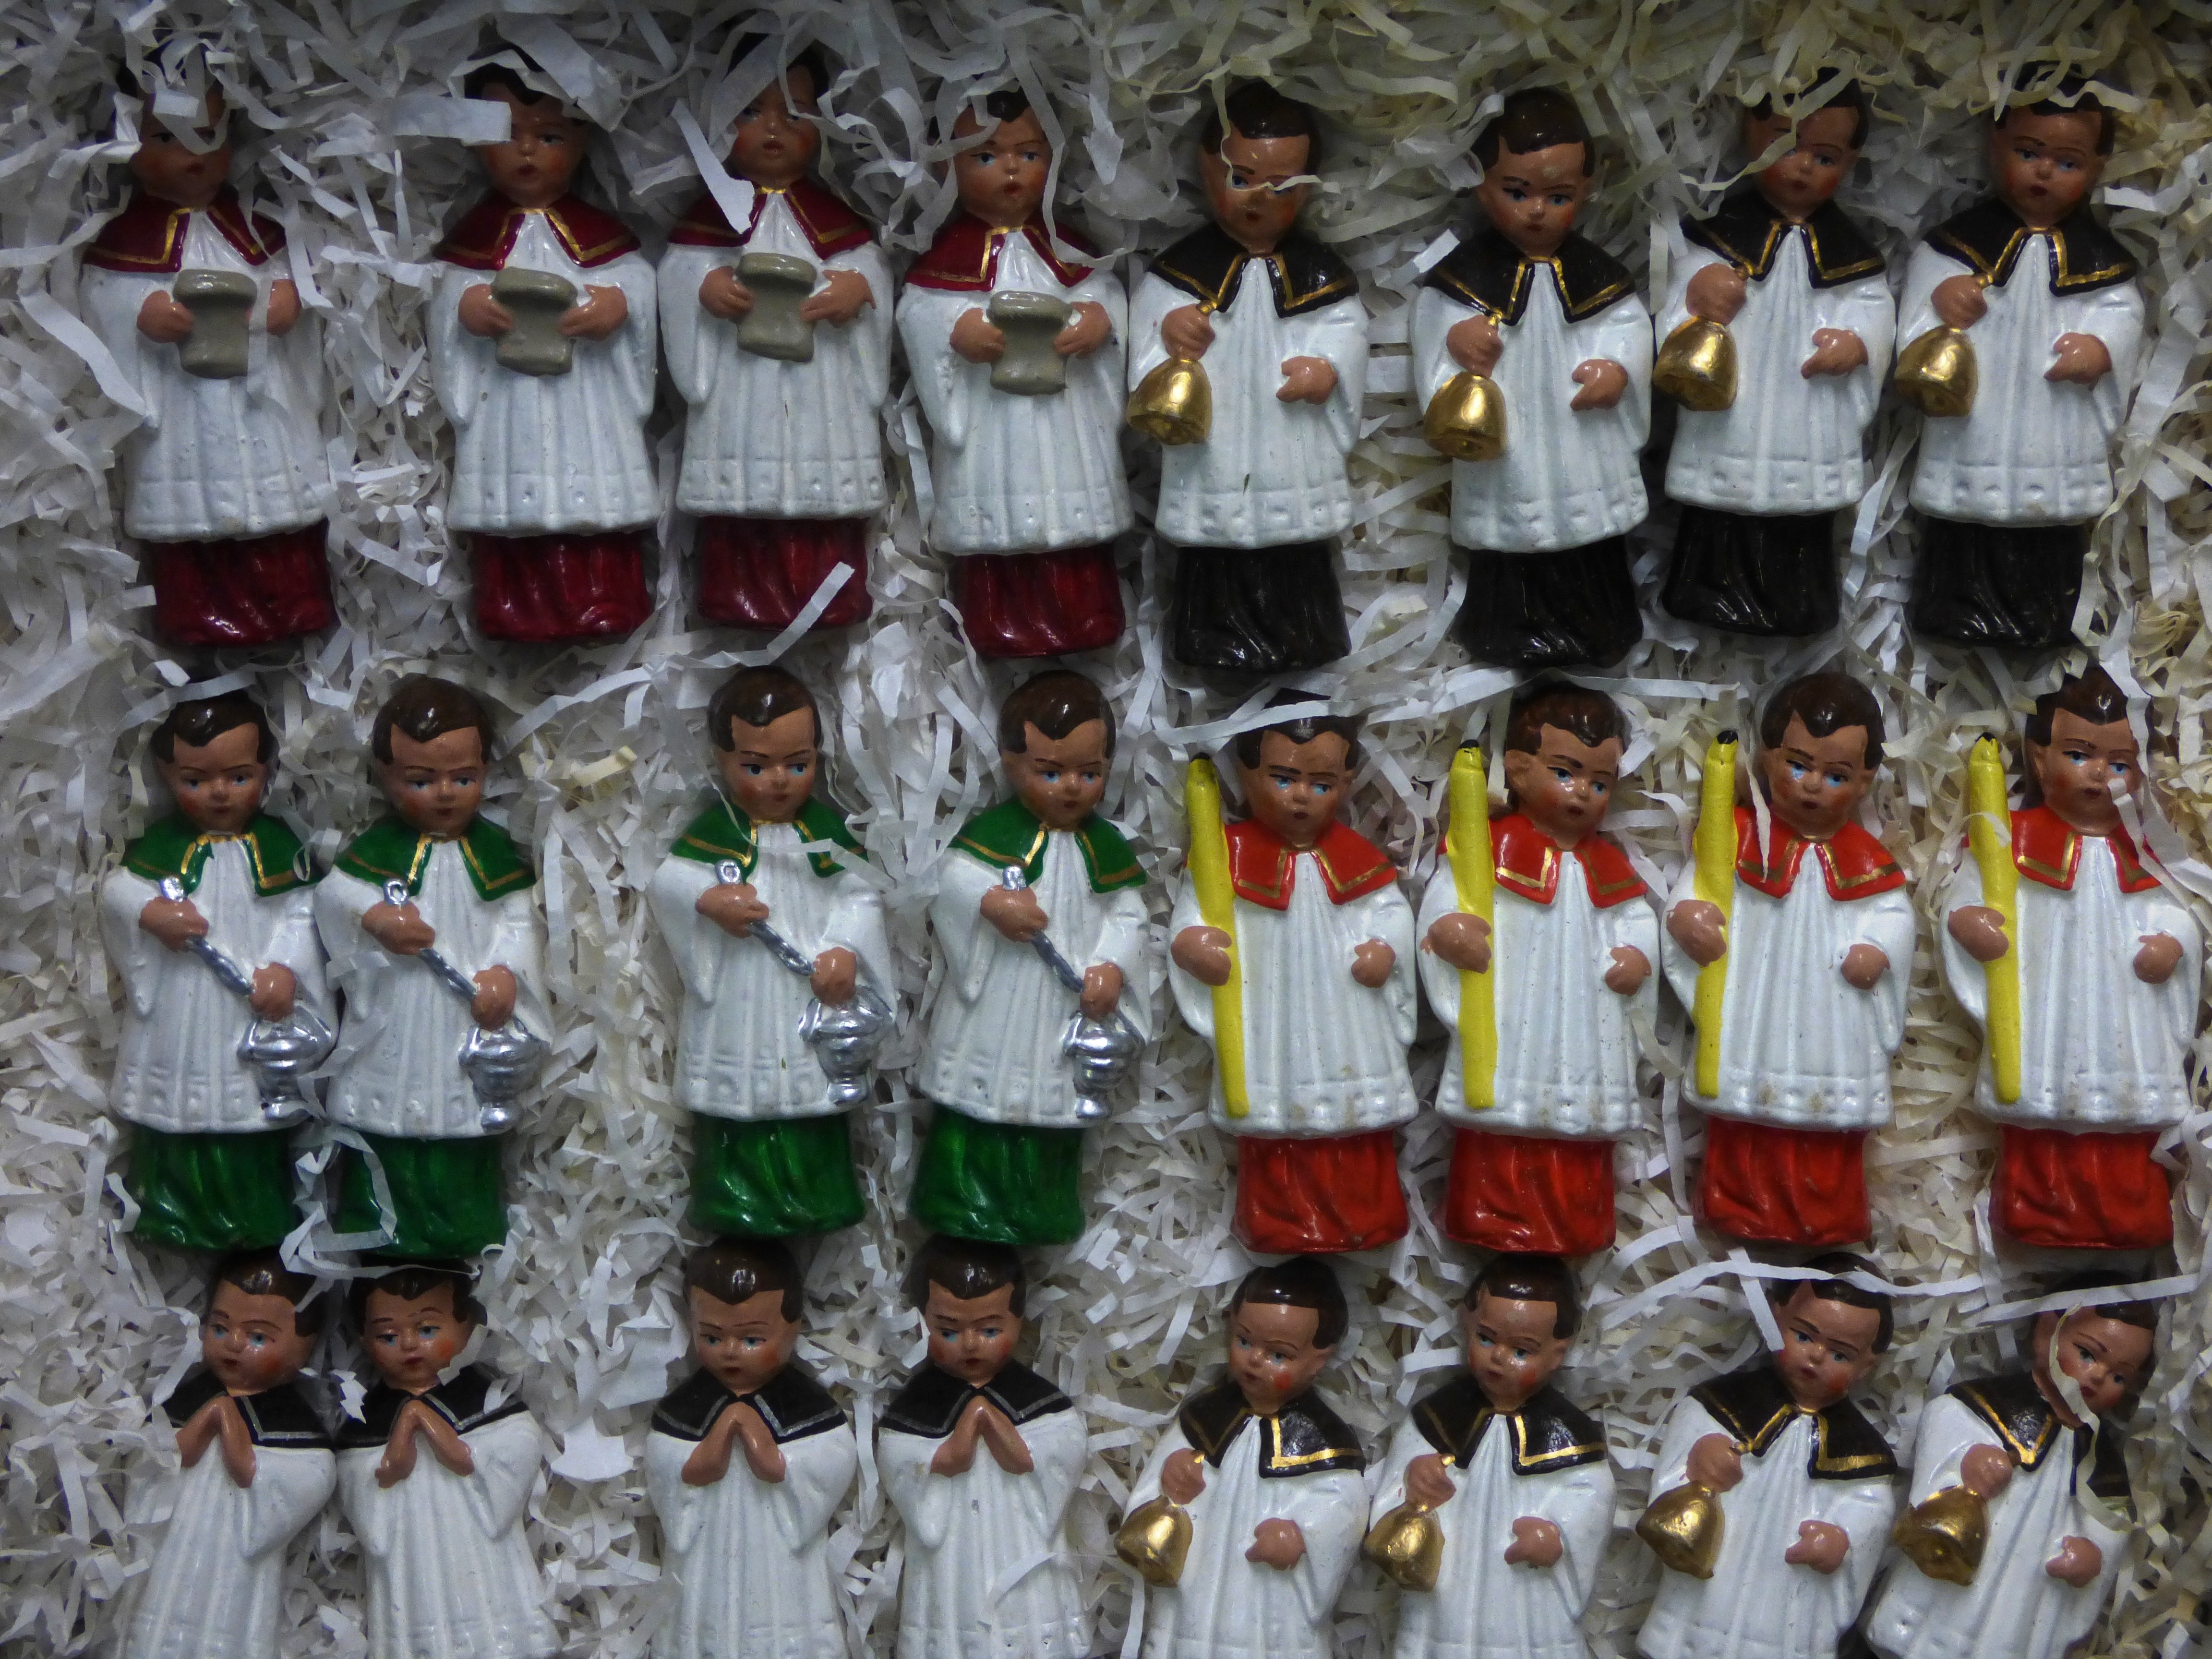 assorted ceramic figurines